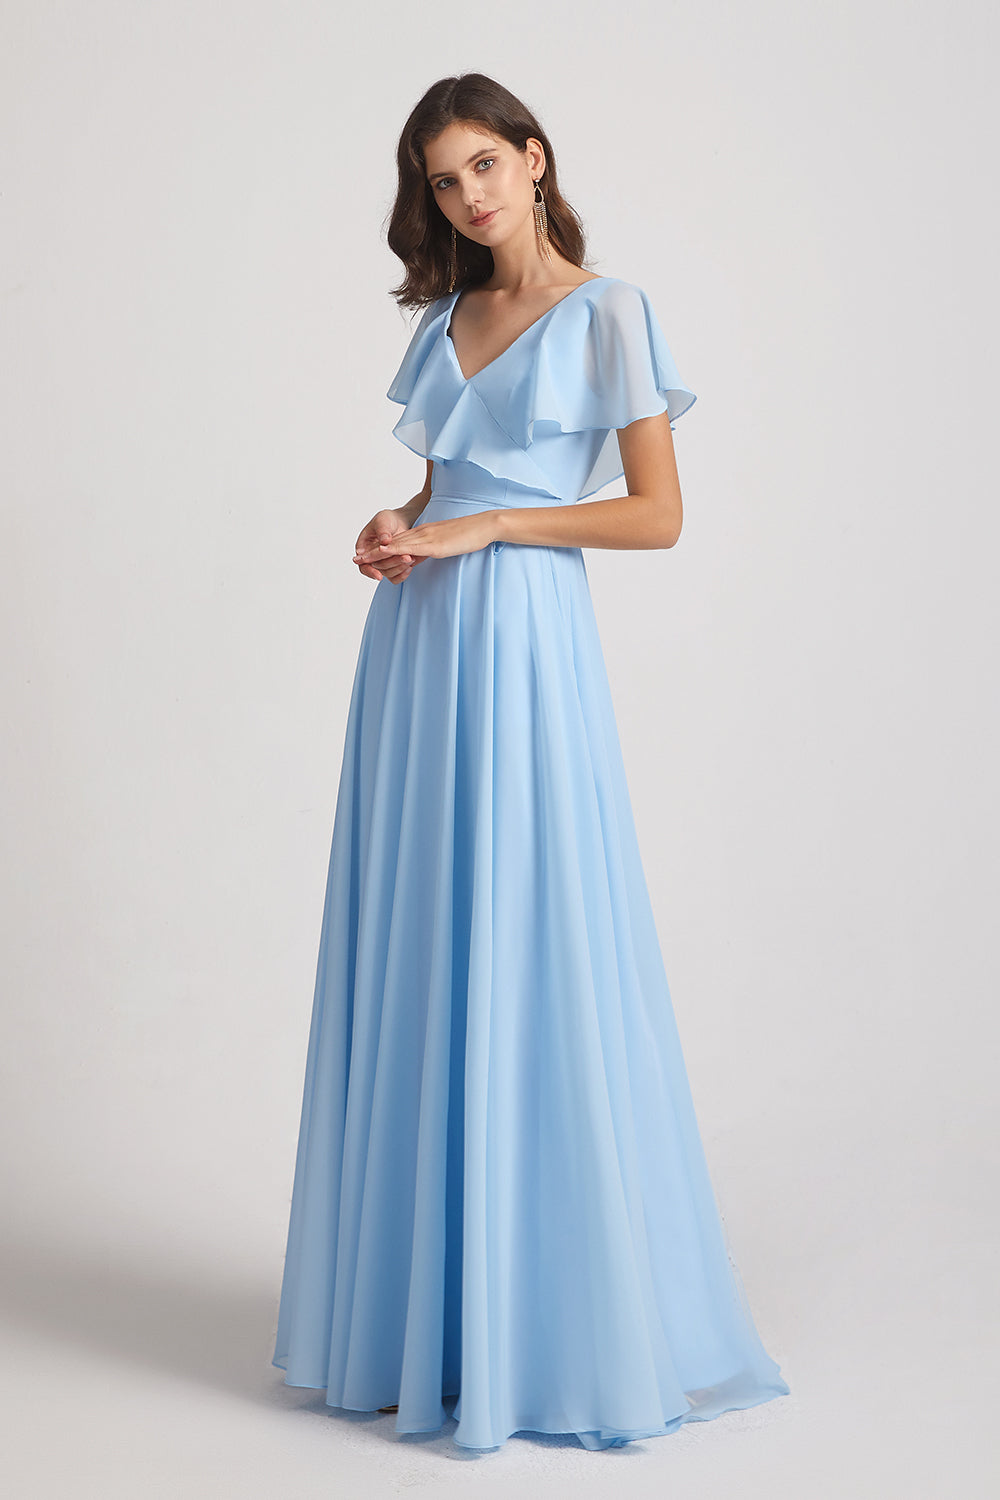 pleated long blue chiffon dress